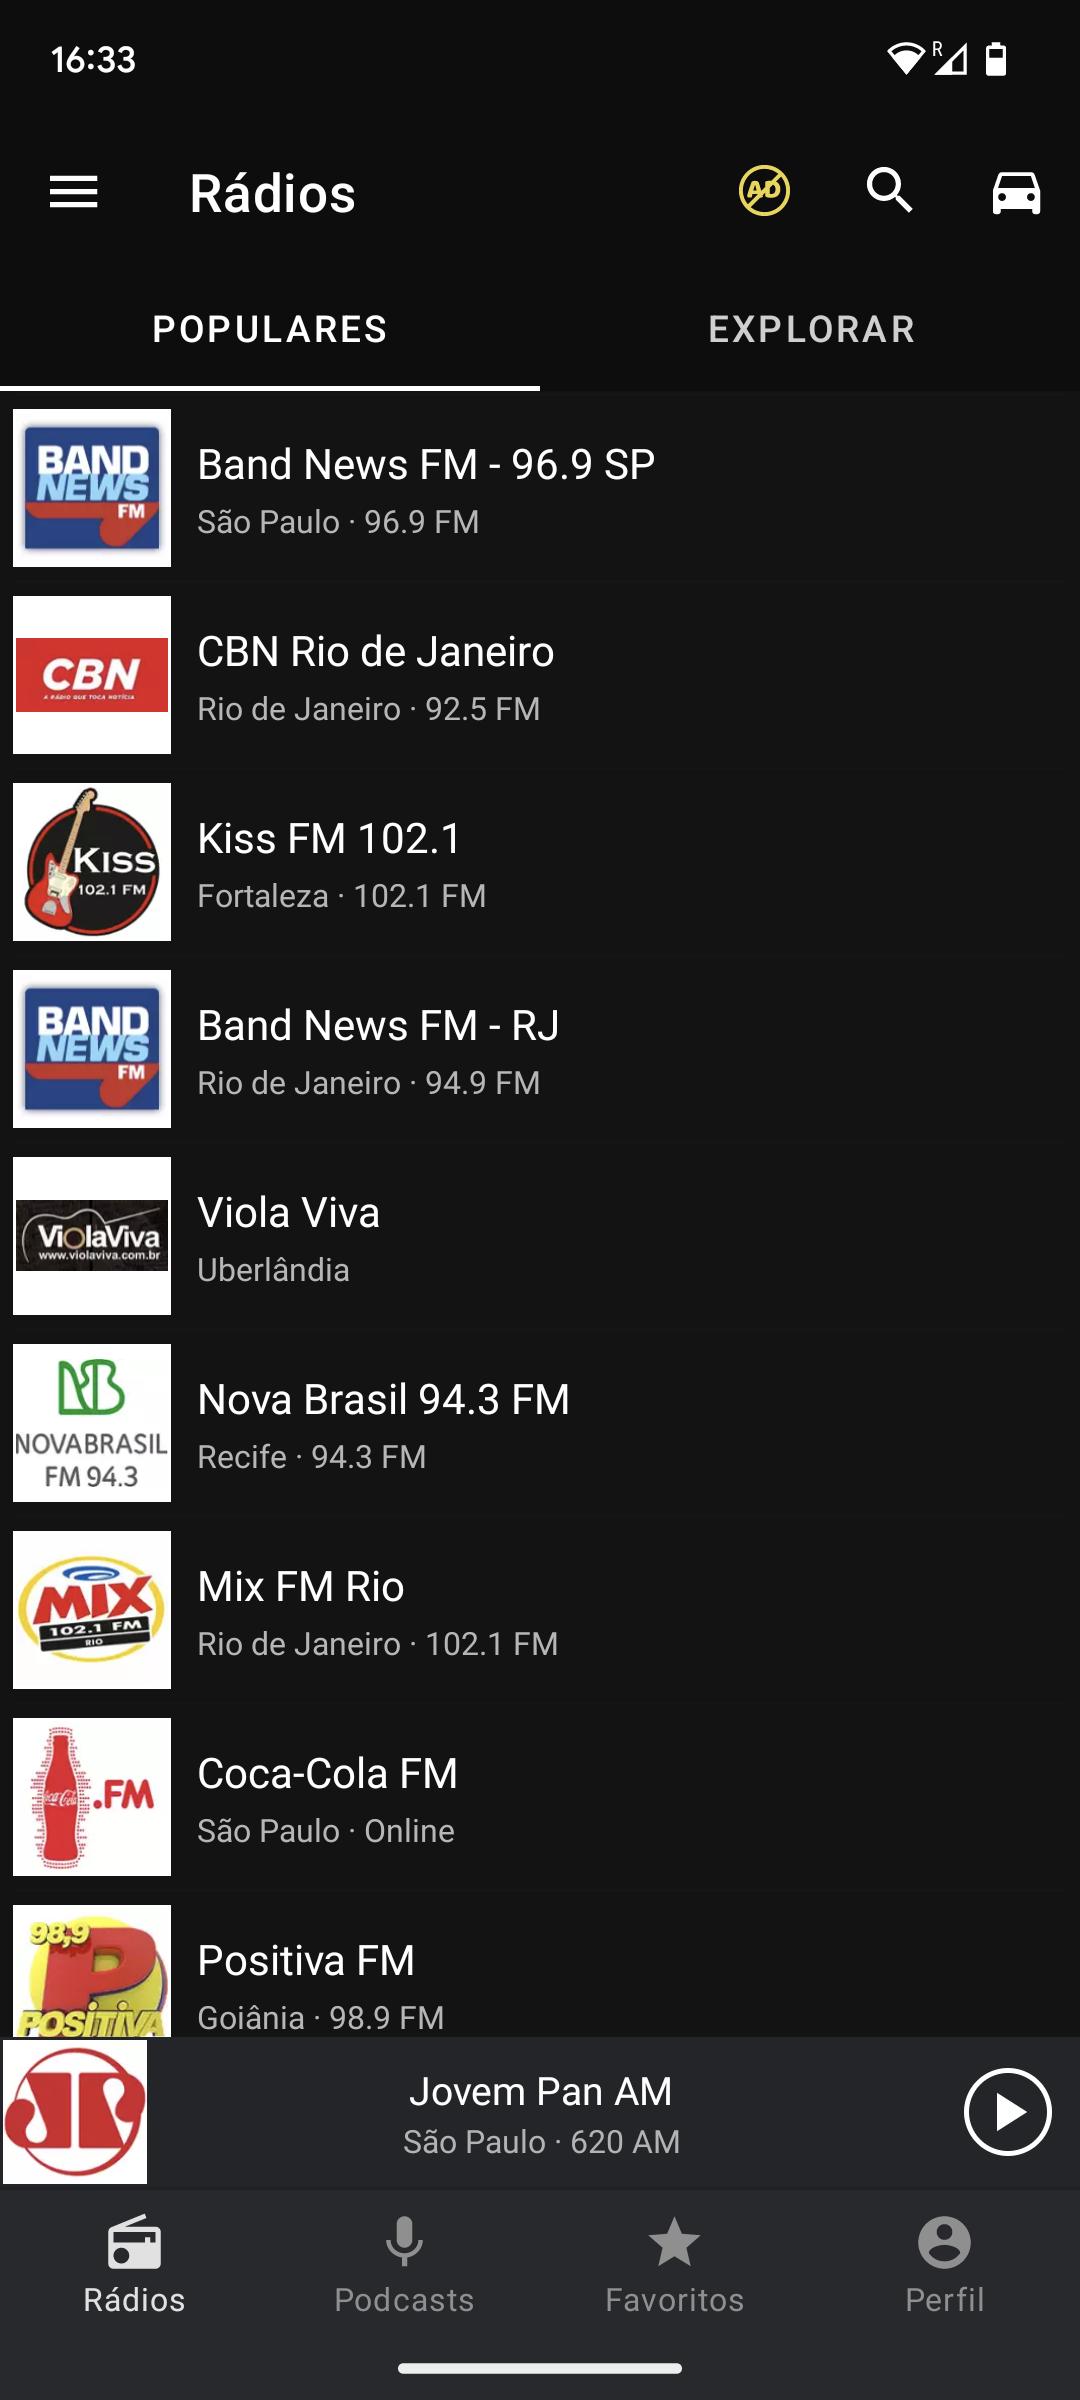 Rádio FM Brasil APK for Android Download